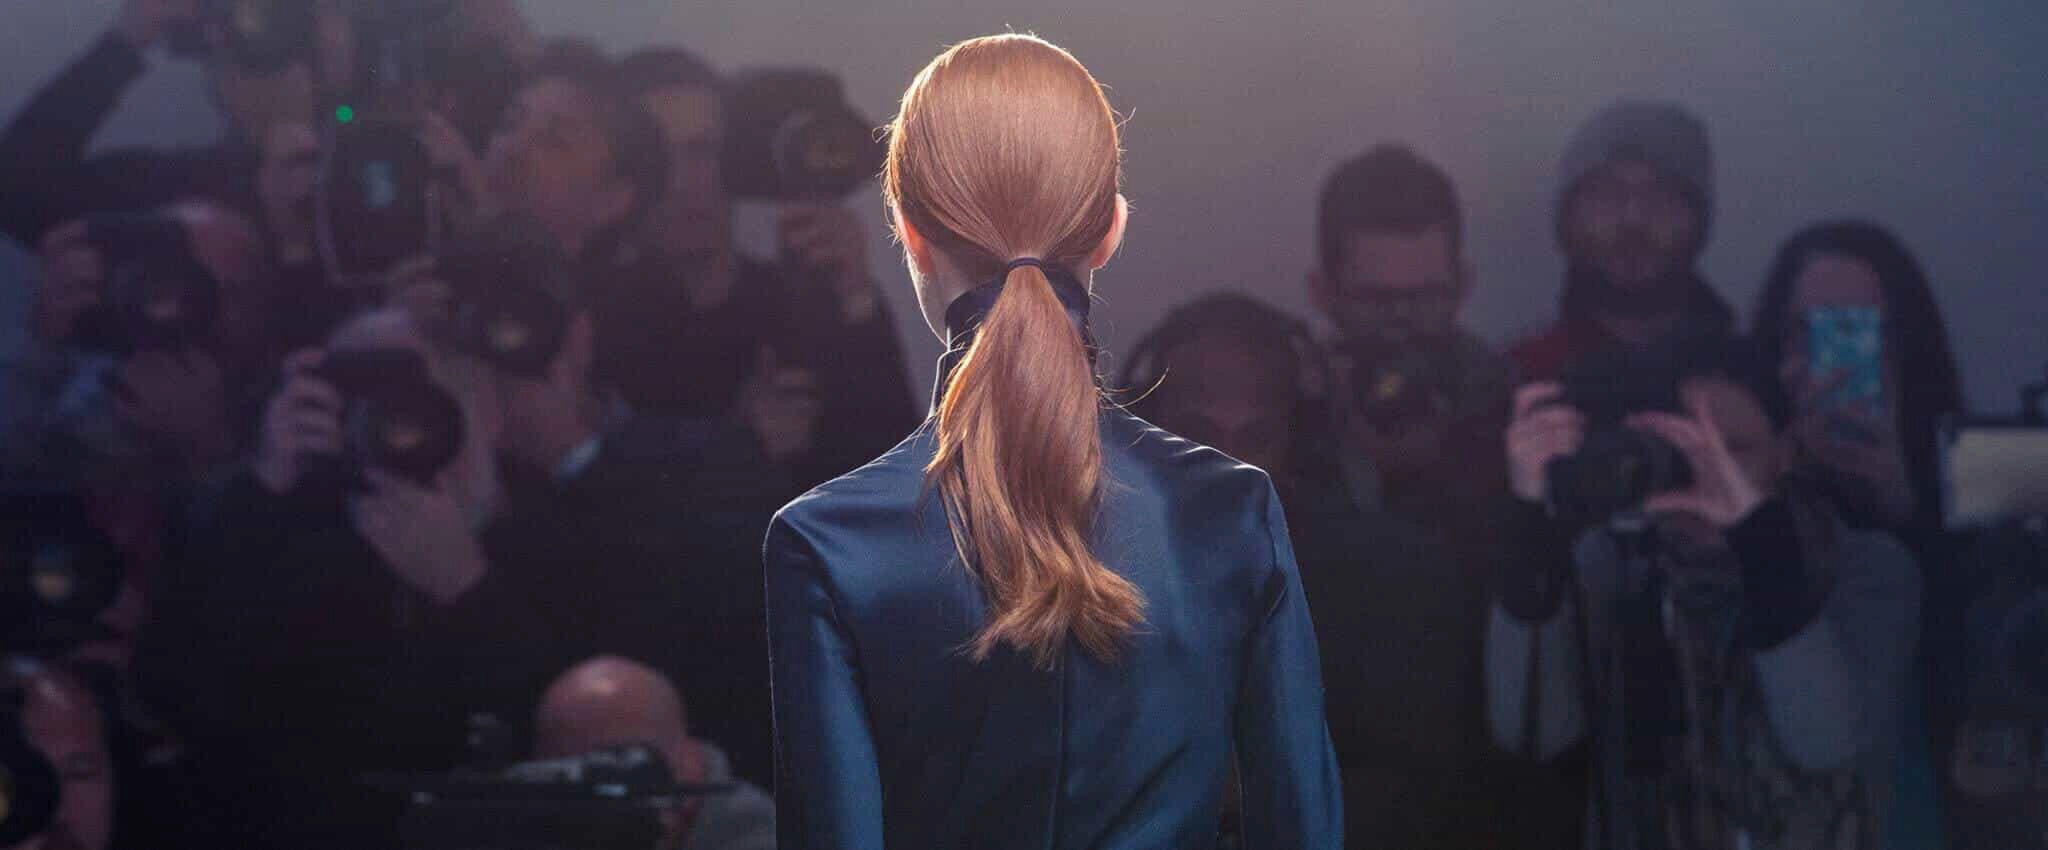 Modelos ubicadas en fila luciendo hermosos peinados mientras una de ellas mira directamente a la cámara.